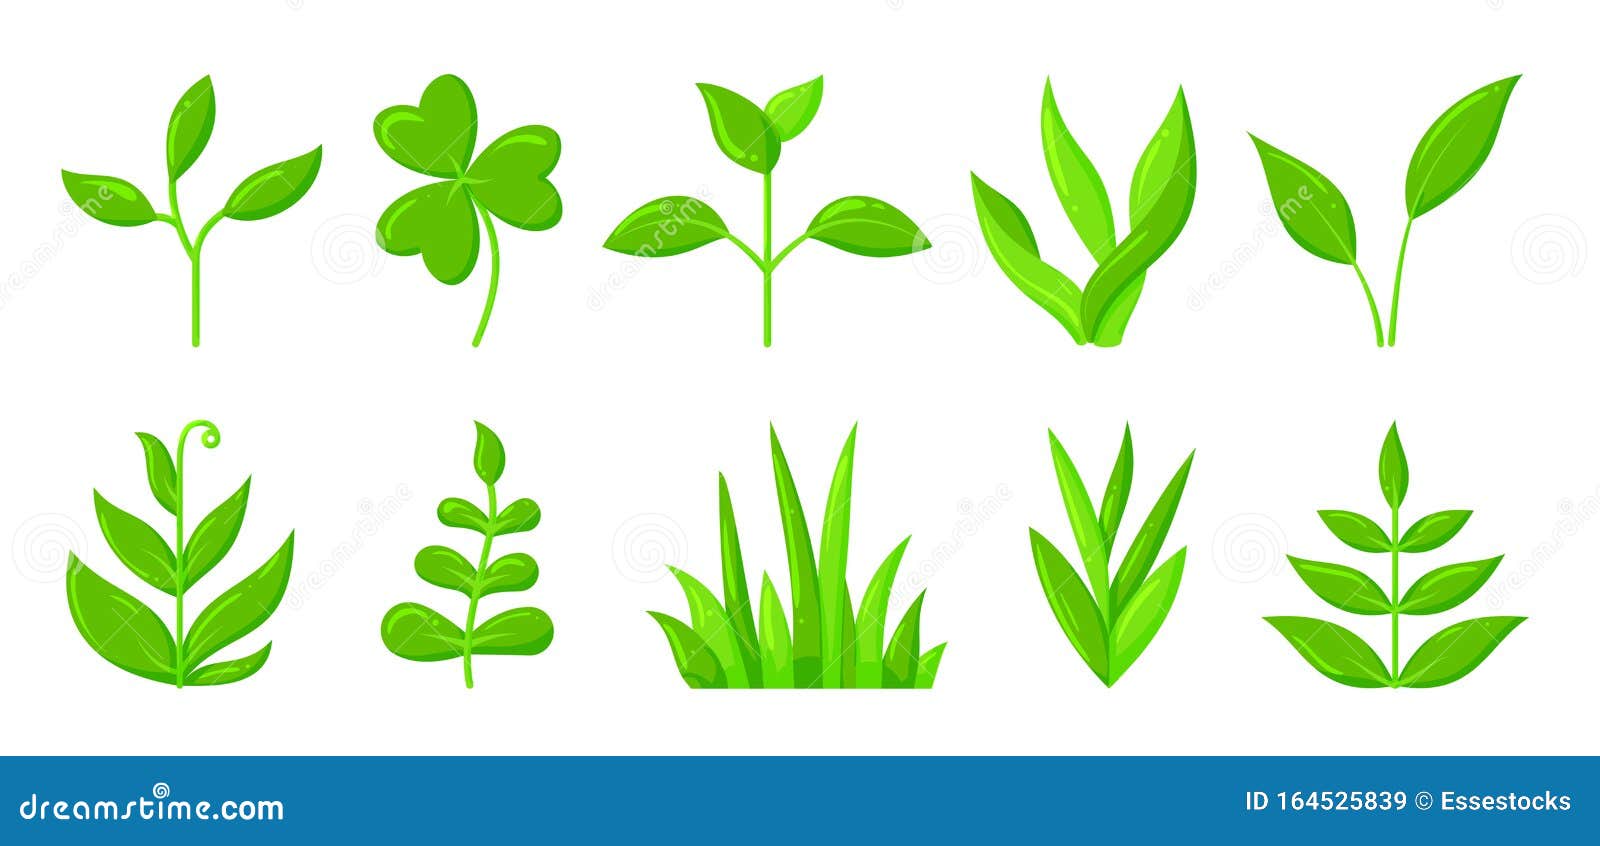 春绿草芽植物卡通图标组向量例证 插画包括有生态 例证 动画片 进展 树苗 叶子 要素